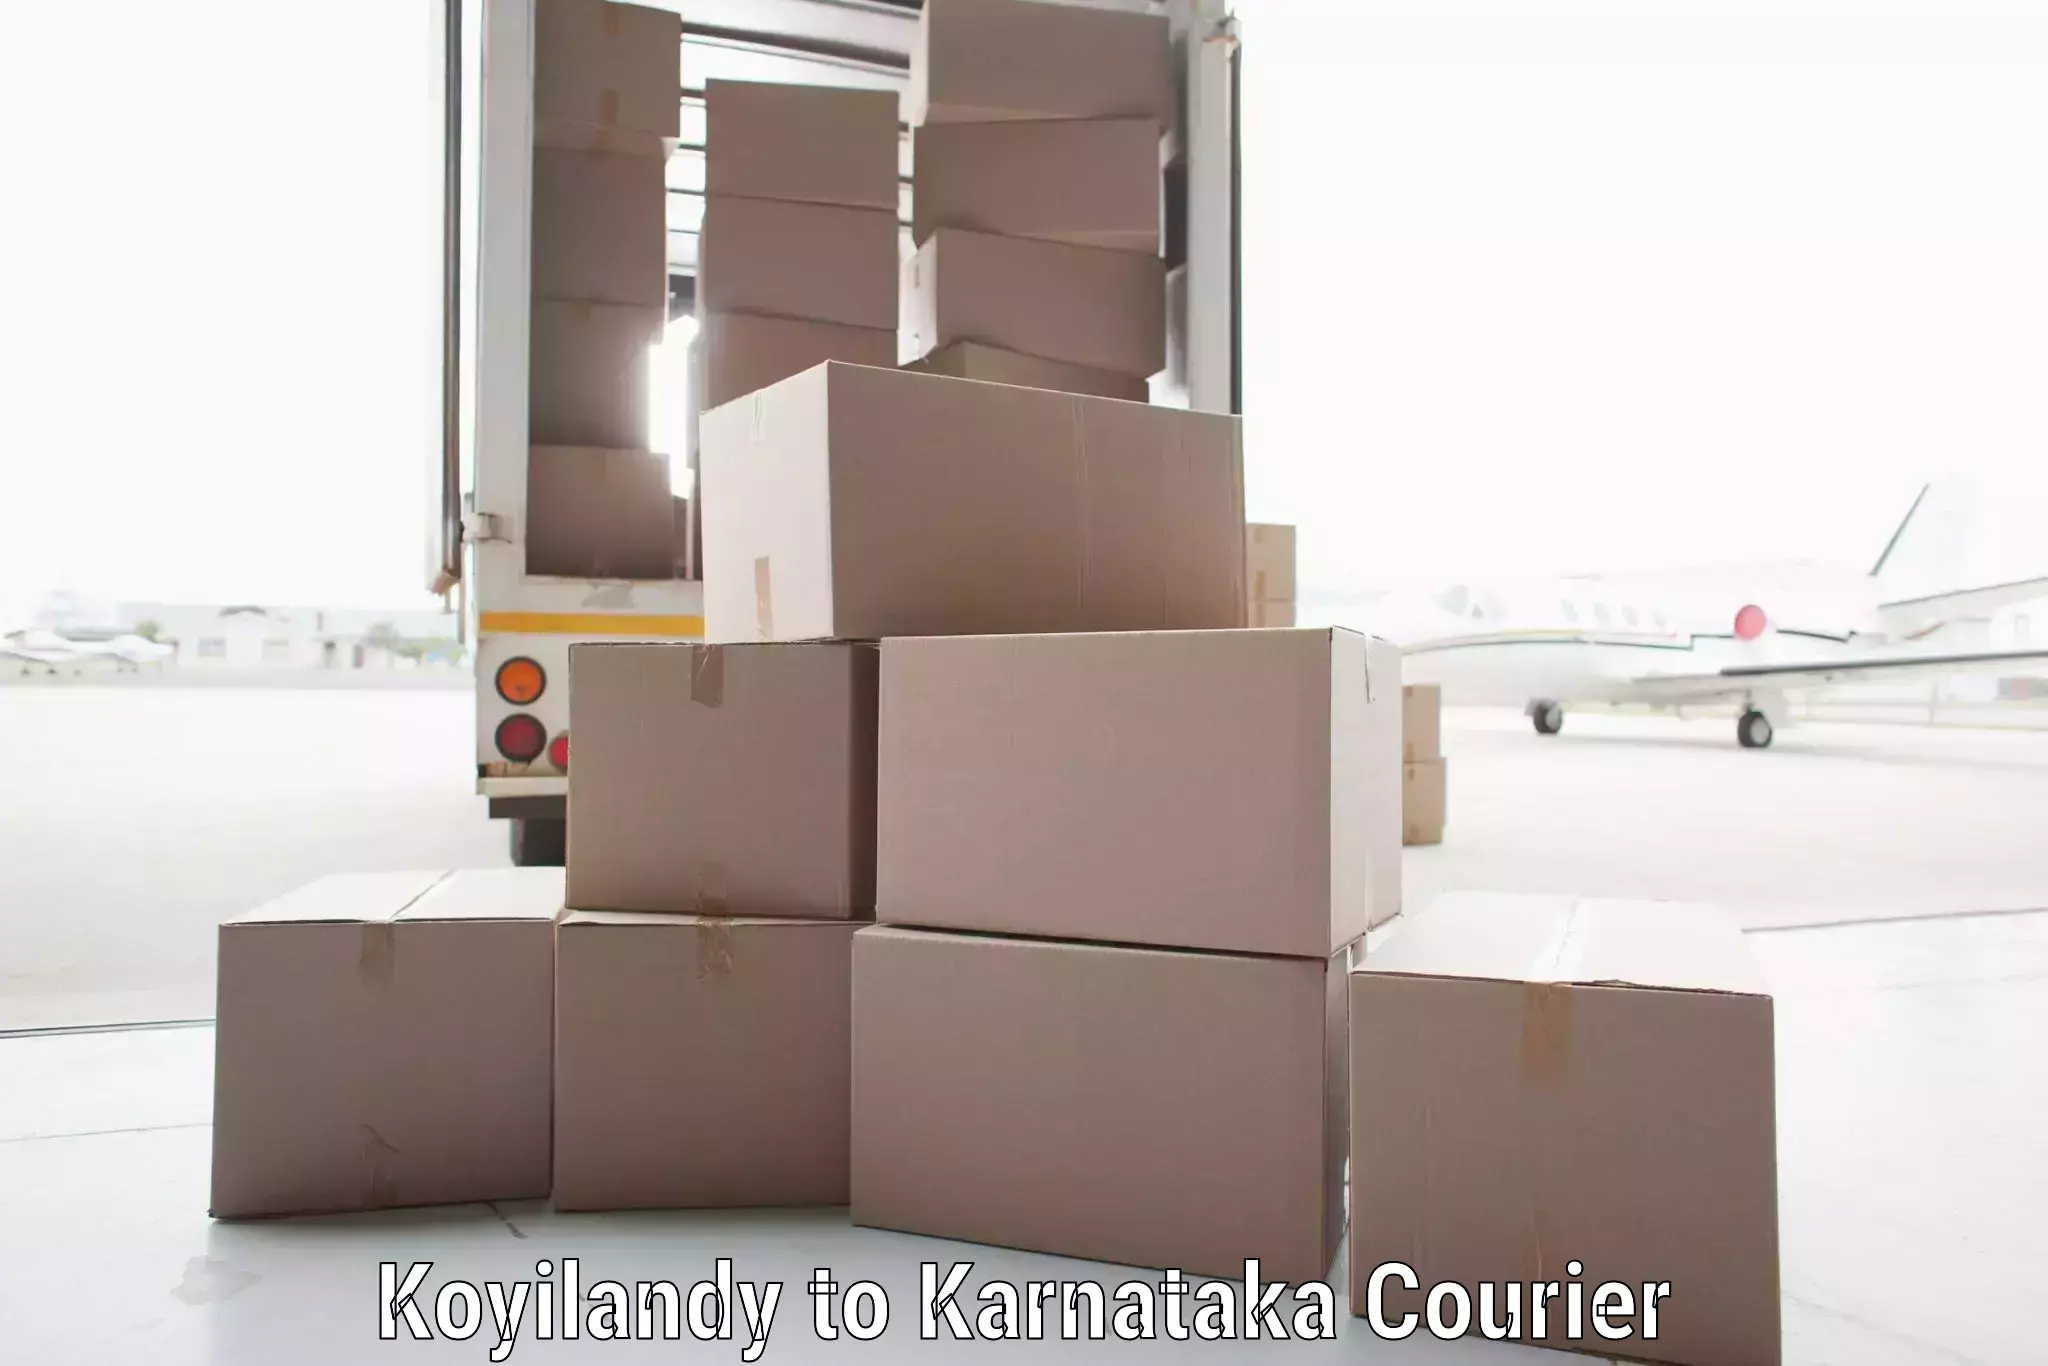 Reliable parcel services Koyilandy to Mangalore Port